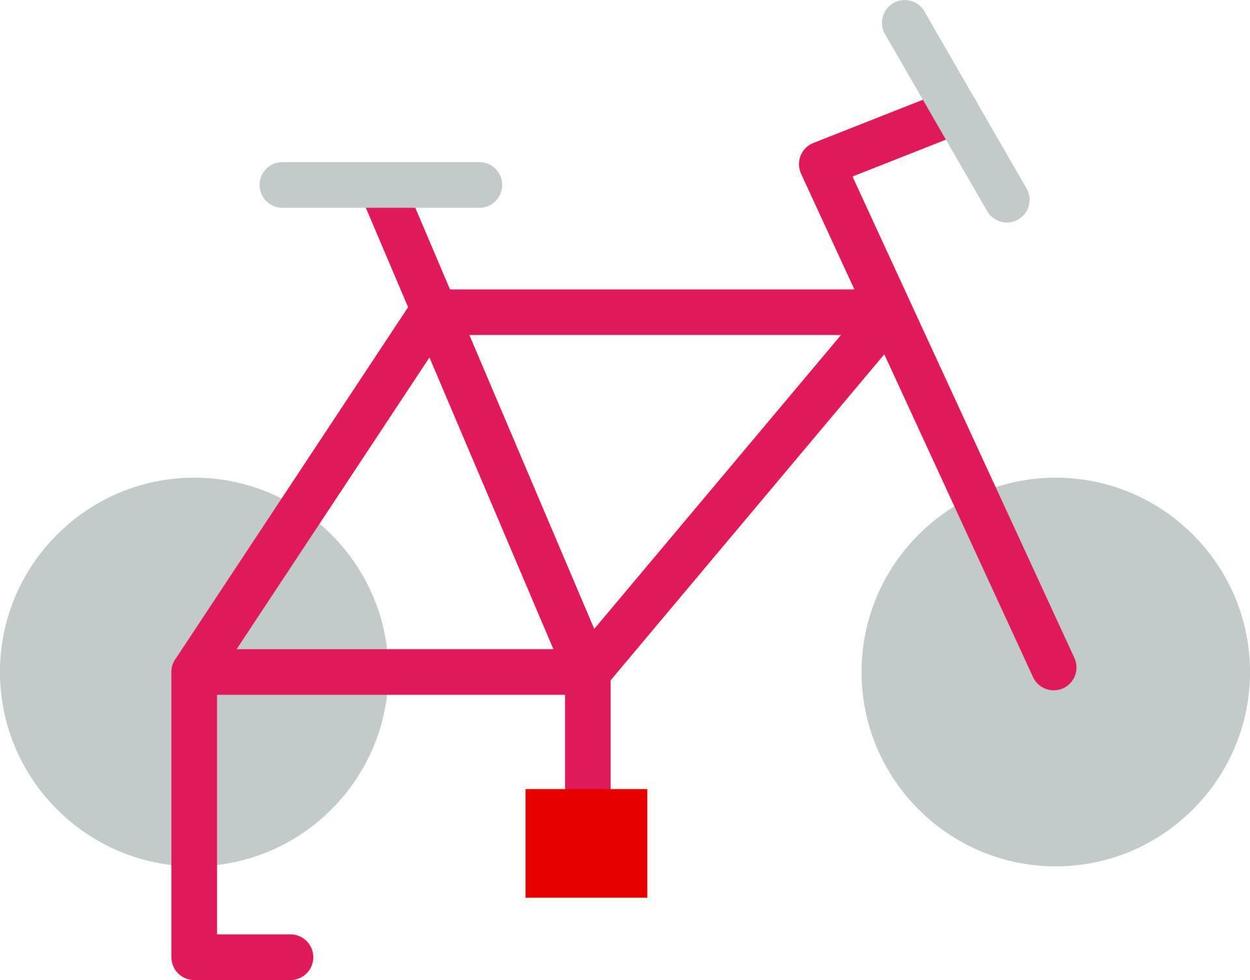 design de ícone de vetor de bicicleta